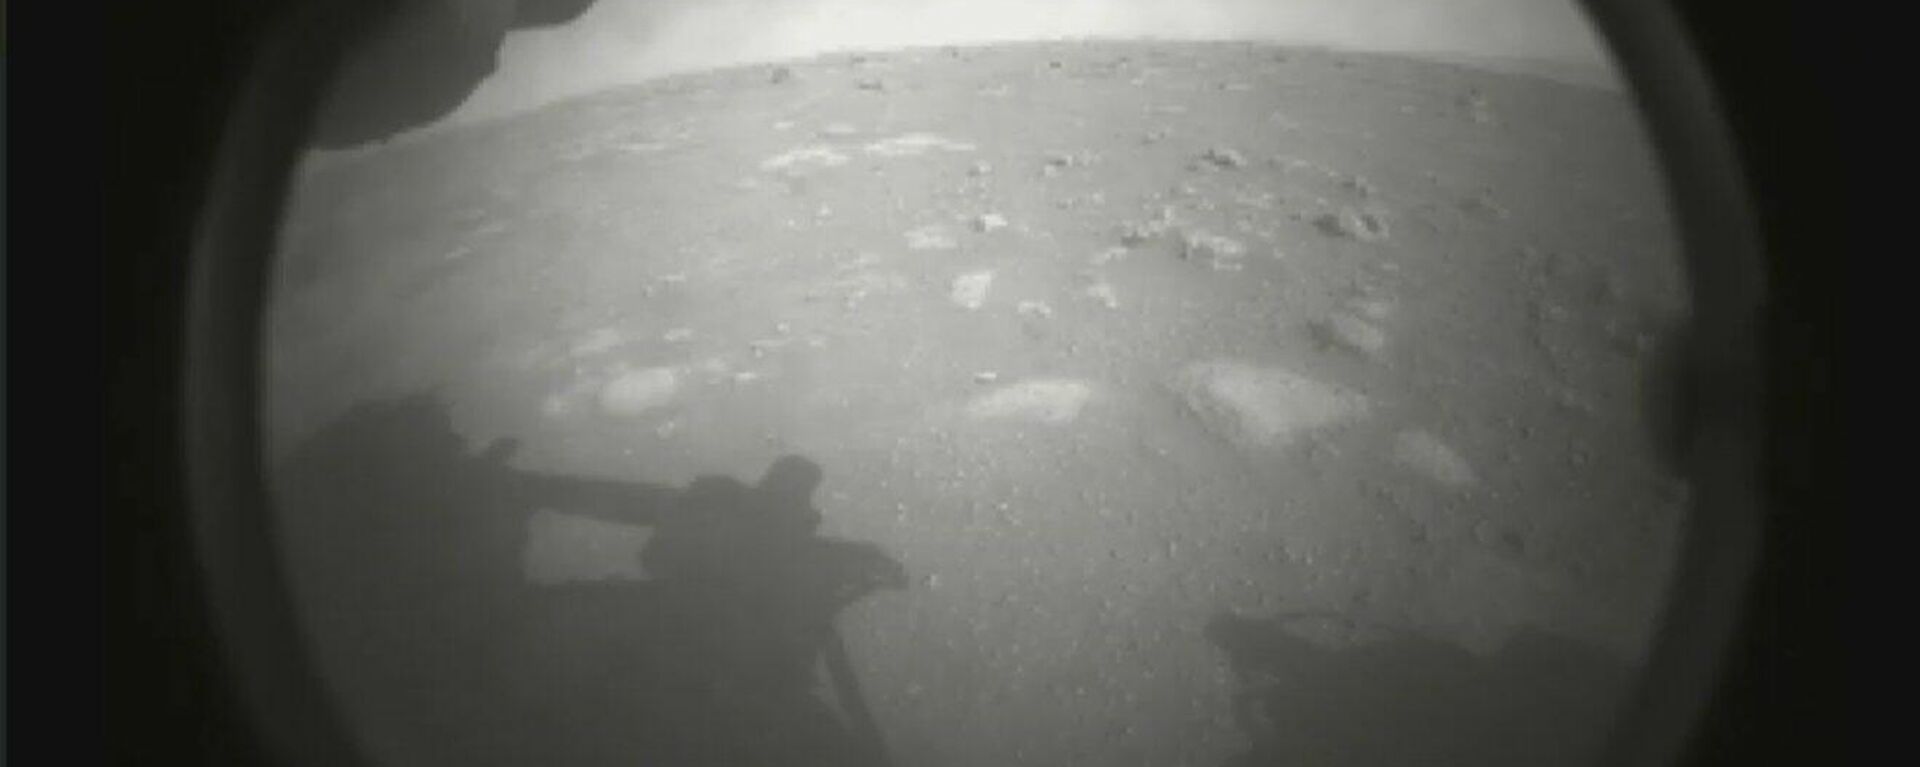 La primera imagen de Marte registrada por el rover Perseverance - Sputnik Mundo, 1920, 19.02.2021